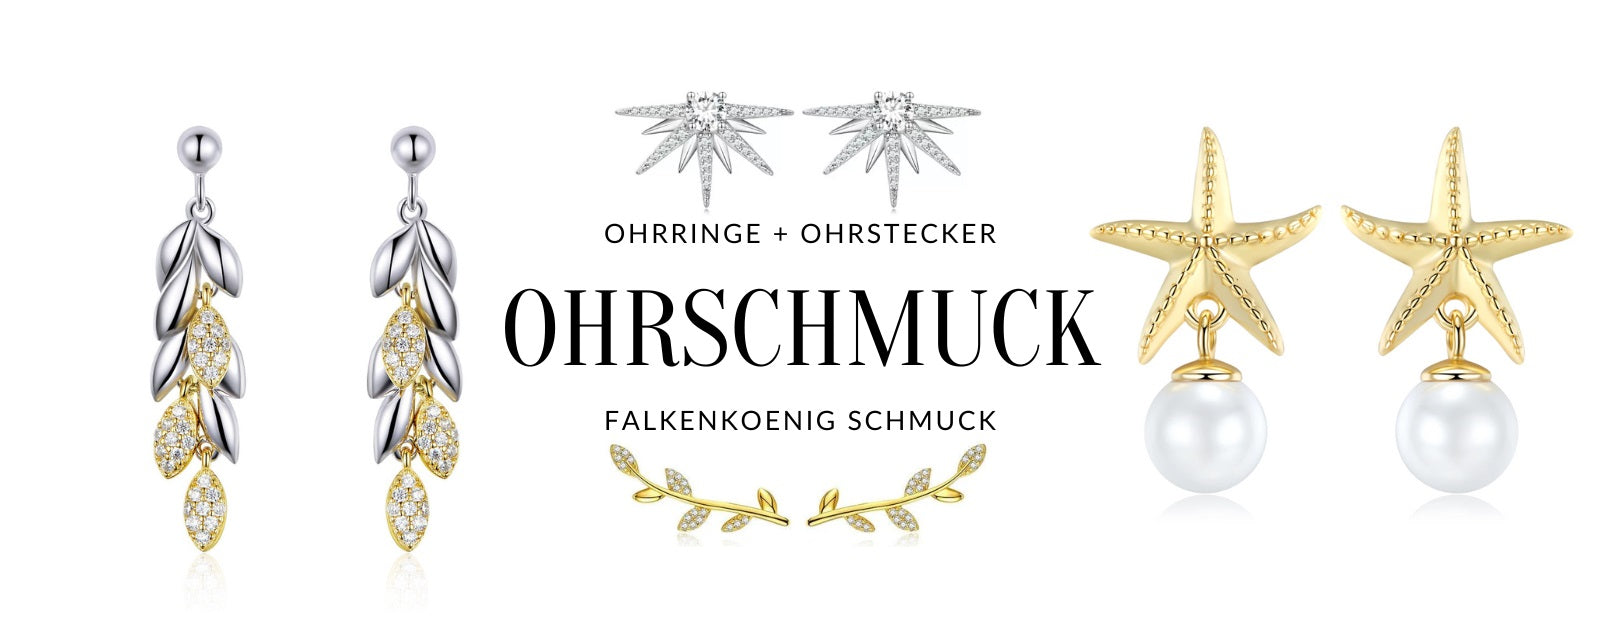  Schicke Ohrringe und Ohrstecker aus hochwertigem Sterlingsilber von Falkenkoenig Schmuck.